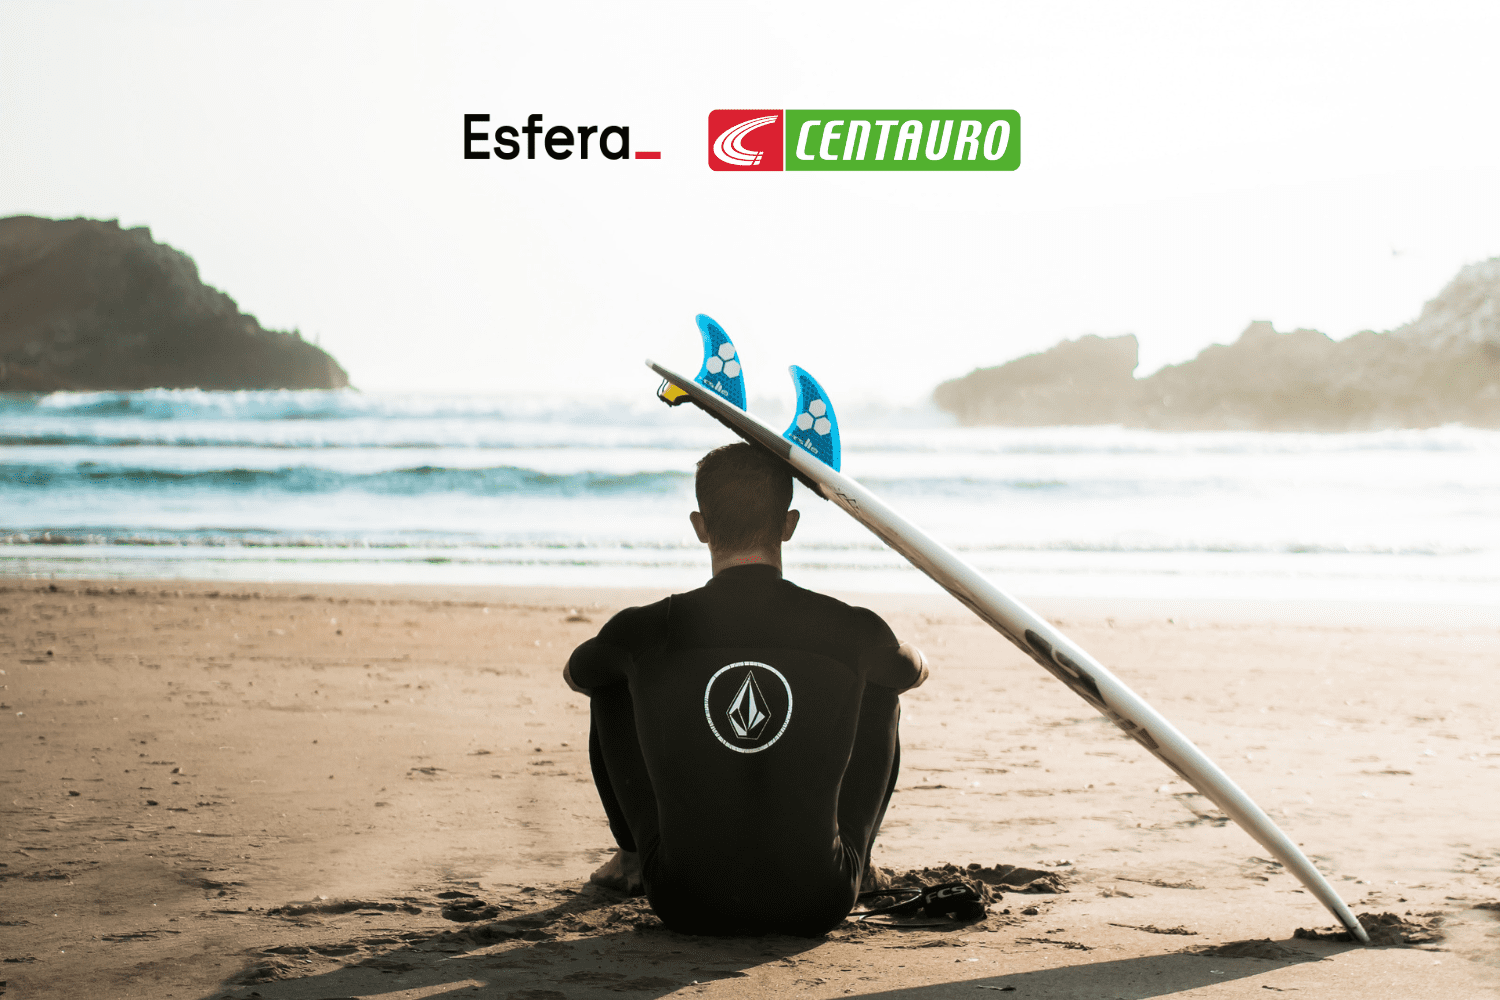 prancha de surfe encostada em surfista com logo Esfera Centauro